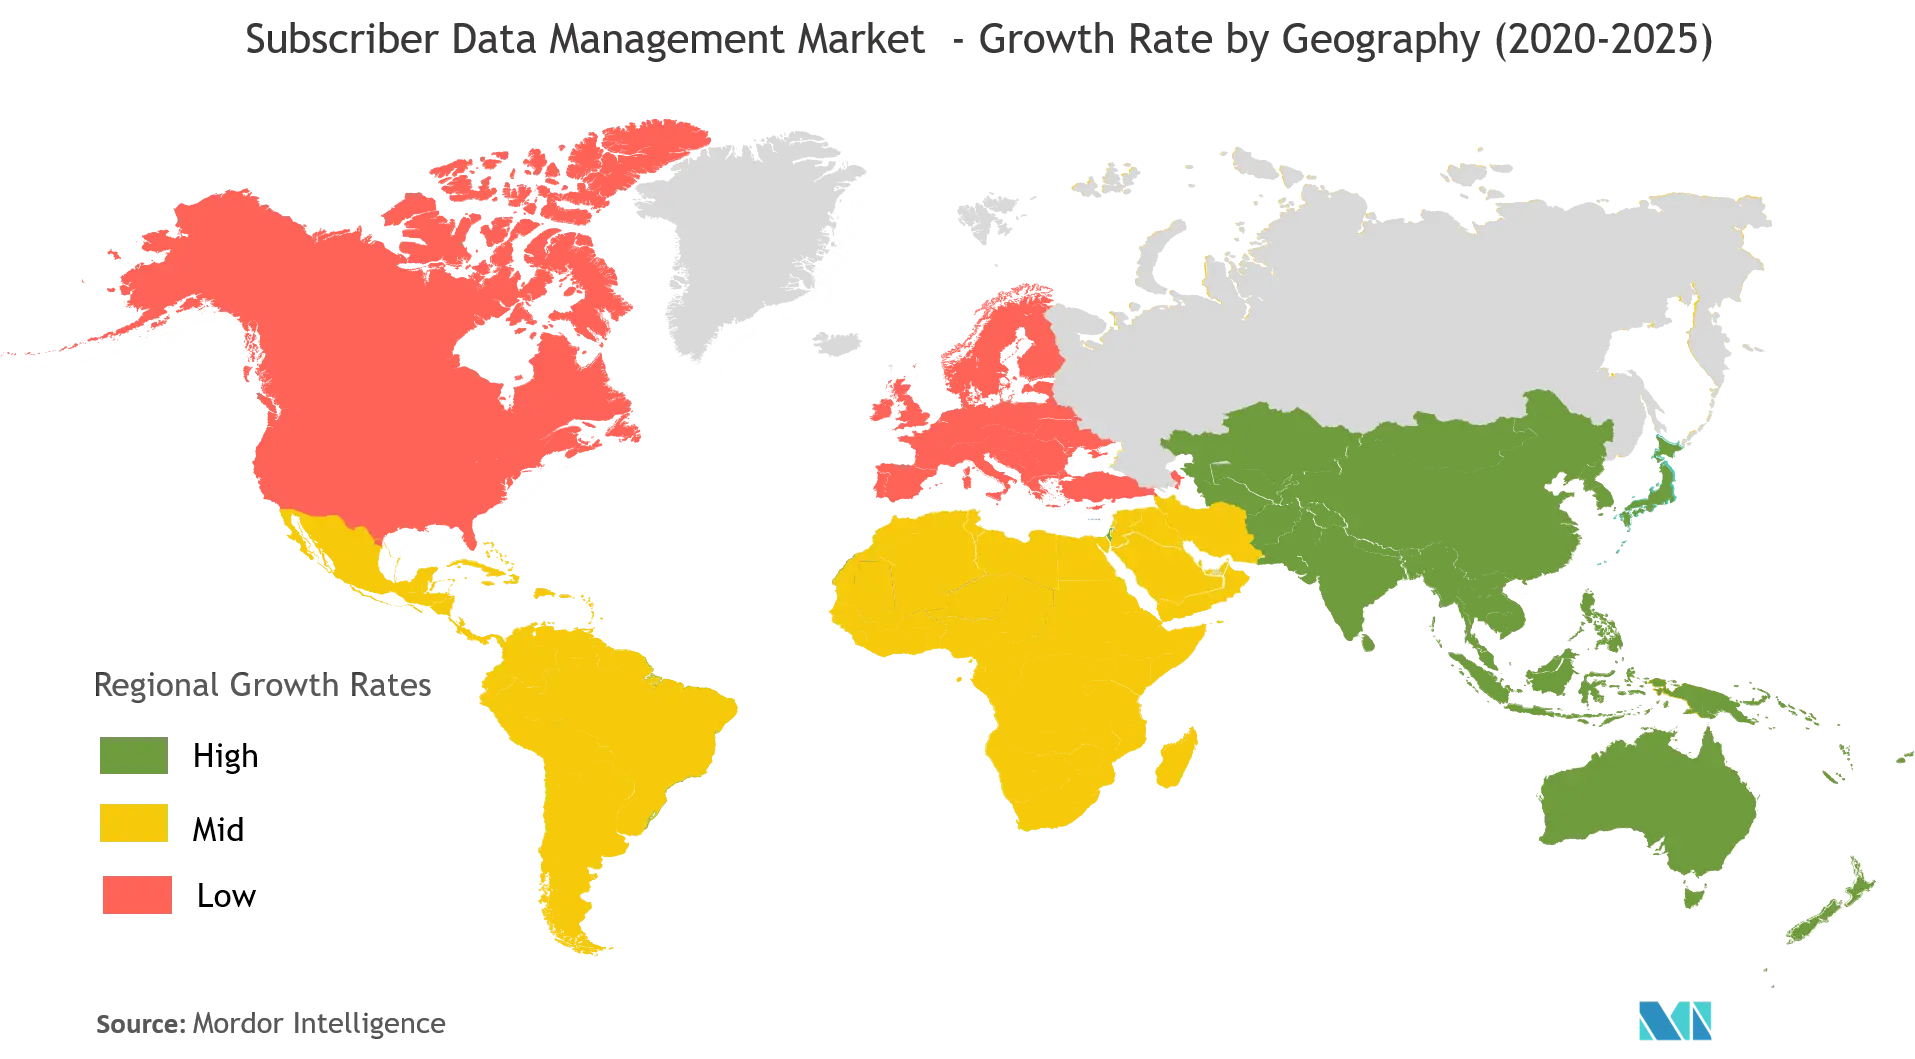 Mercado de gestión de datos de suscriptores tasa de crecimiento por geografía (2020-2025)